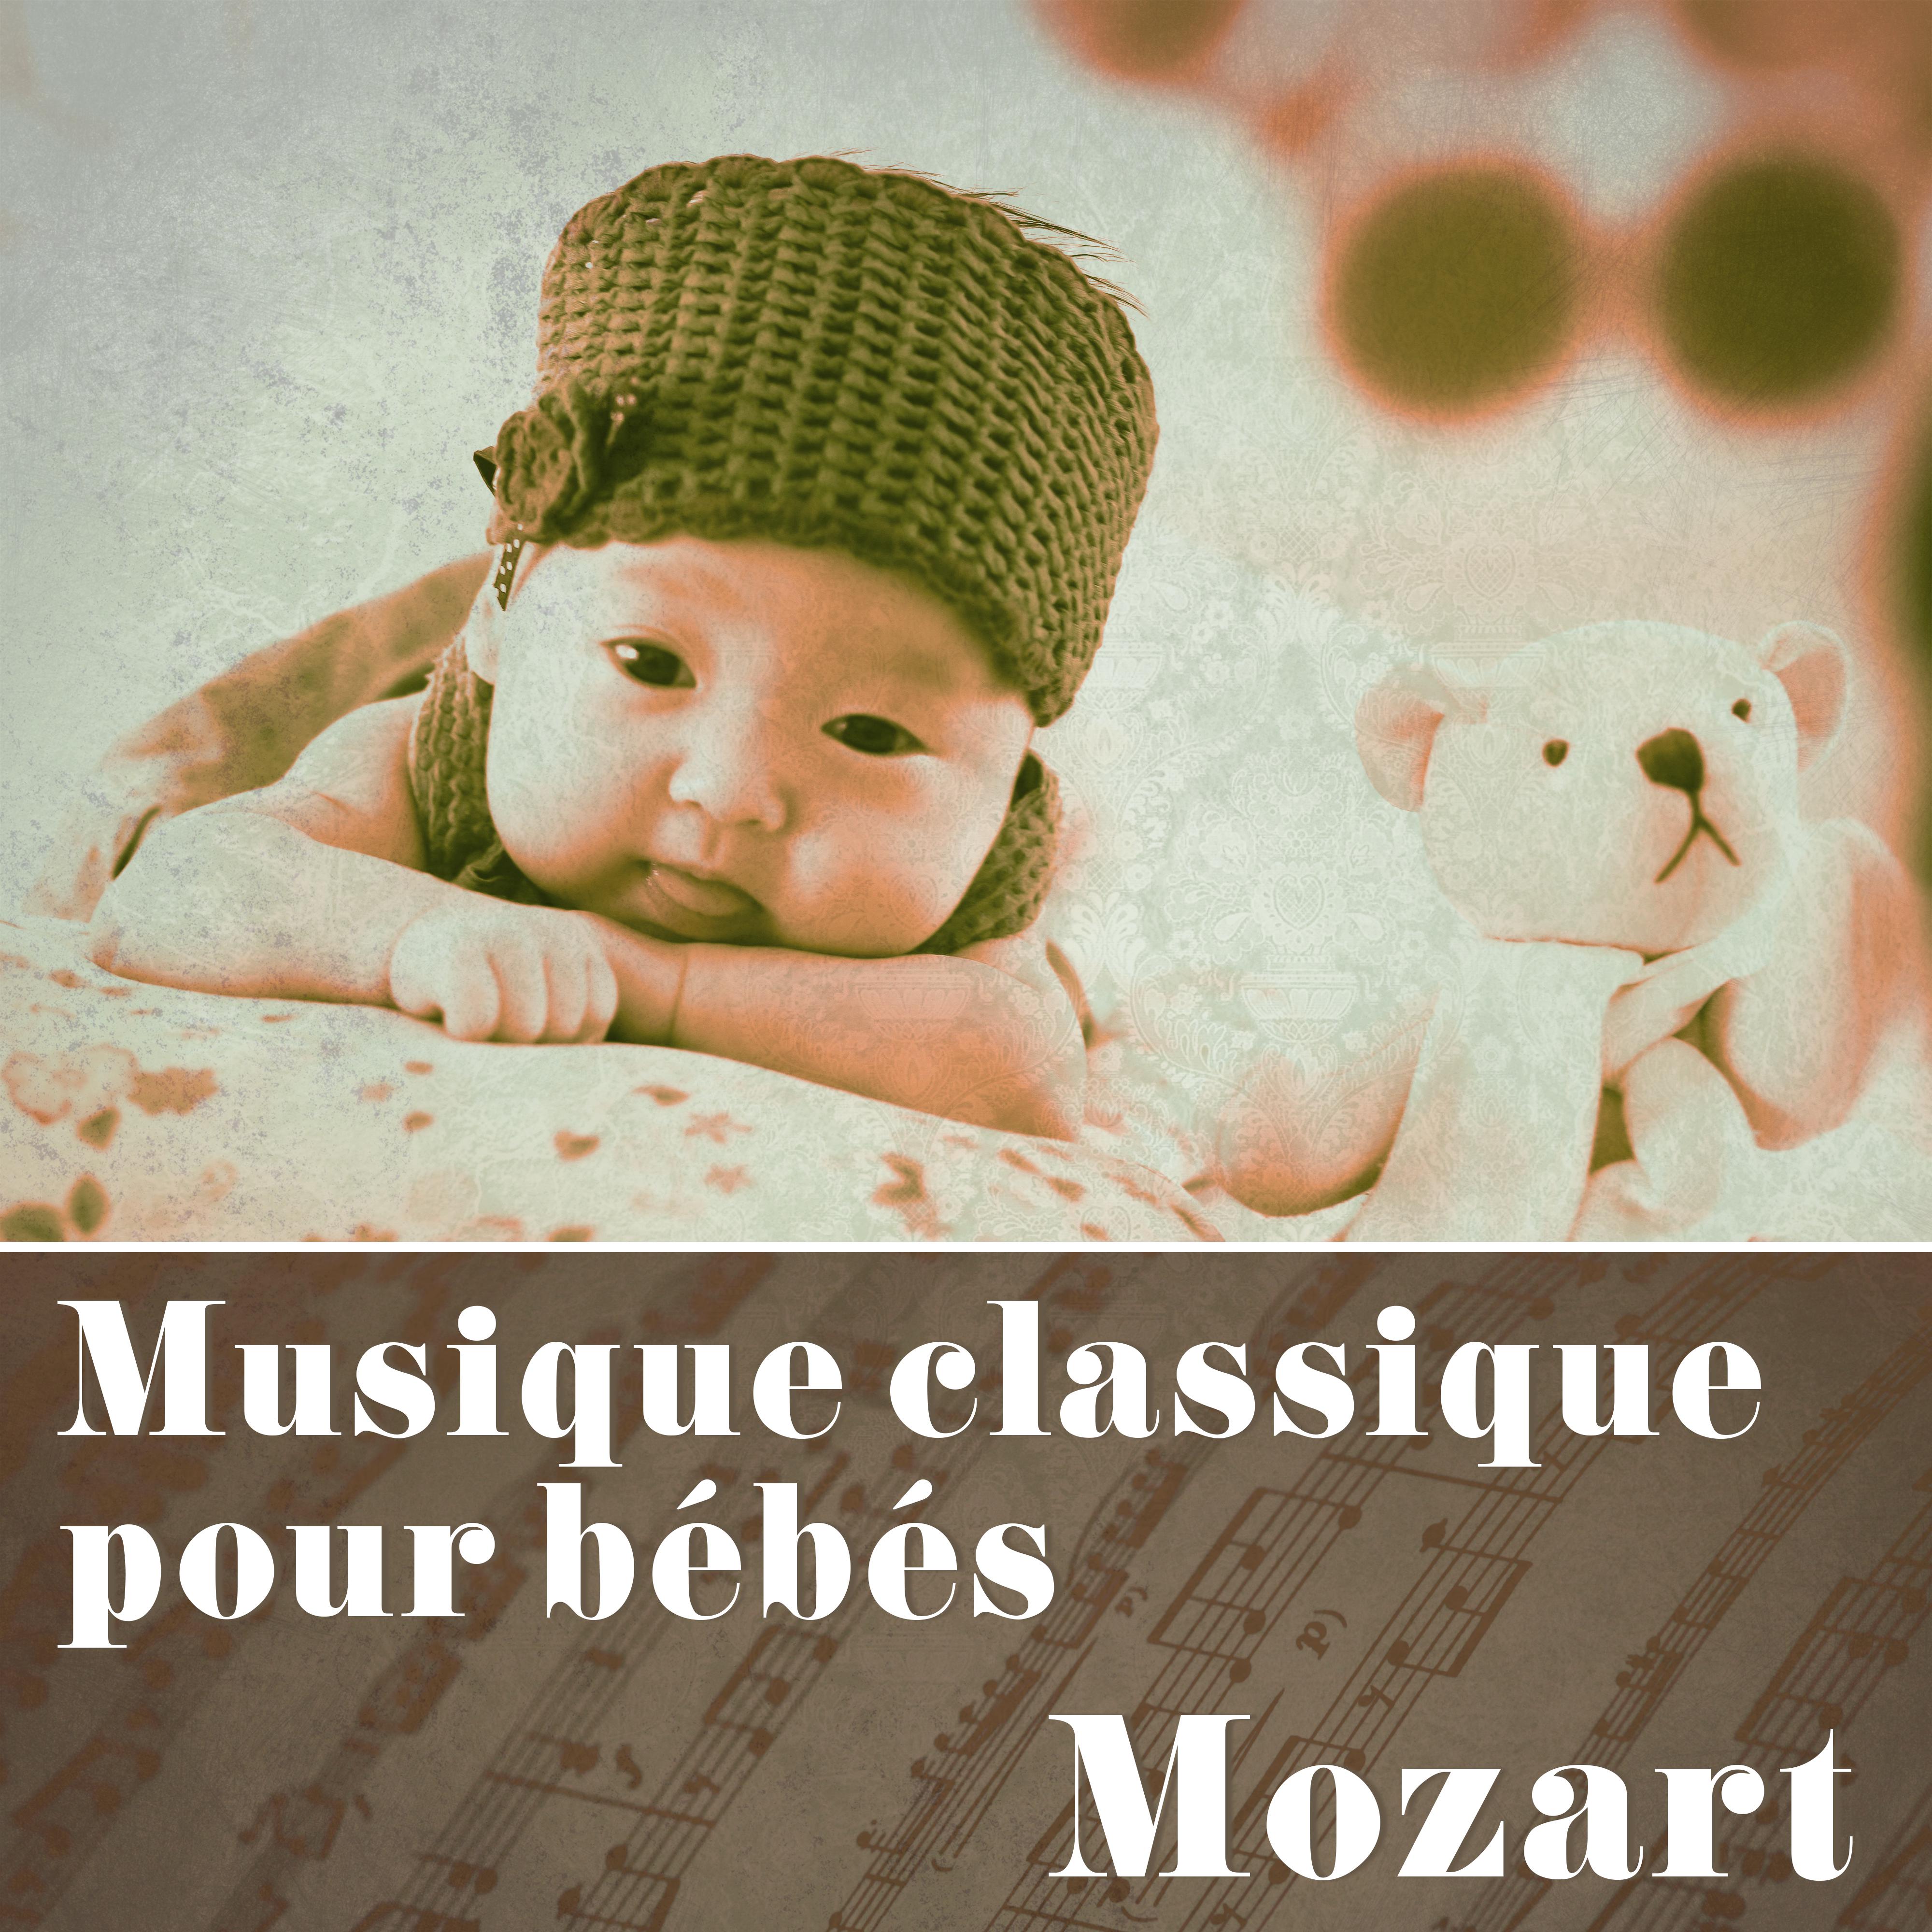 Musique classique pour be be s: Mozart  Sons relaxants de la musique classique, la musique pour stimuler le cerveau